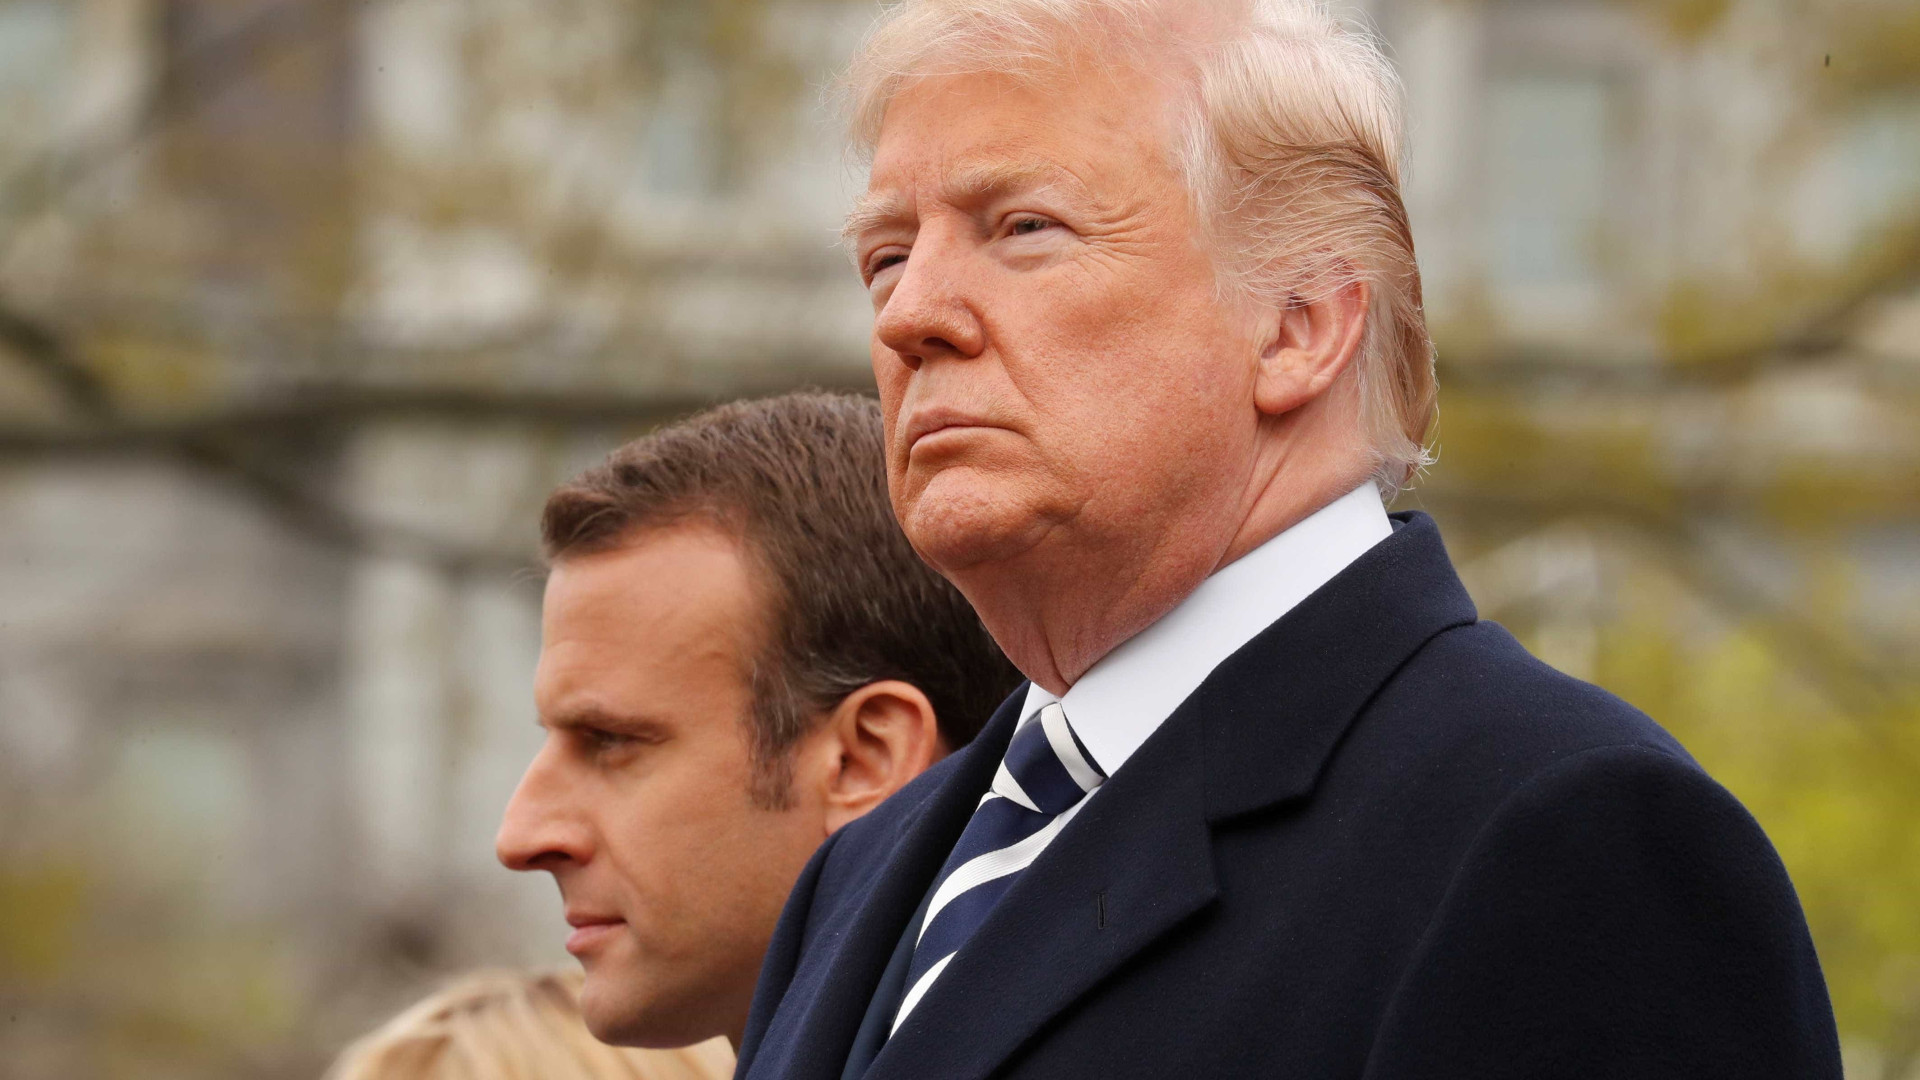 Trump se reúne com Macron para discutir Síria e Irã